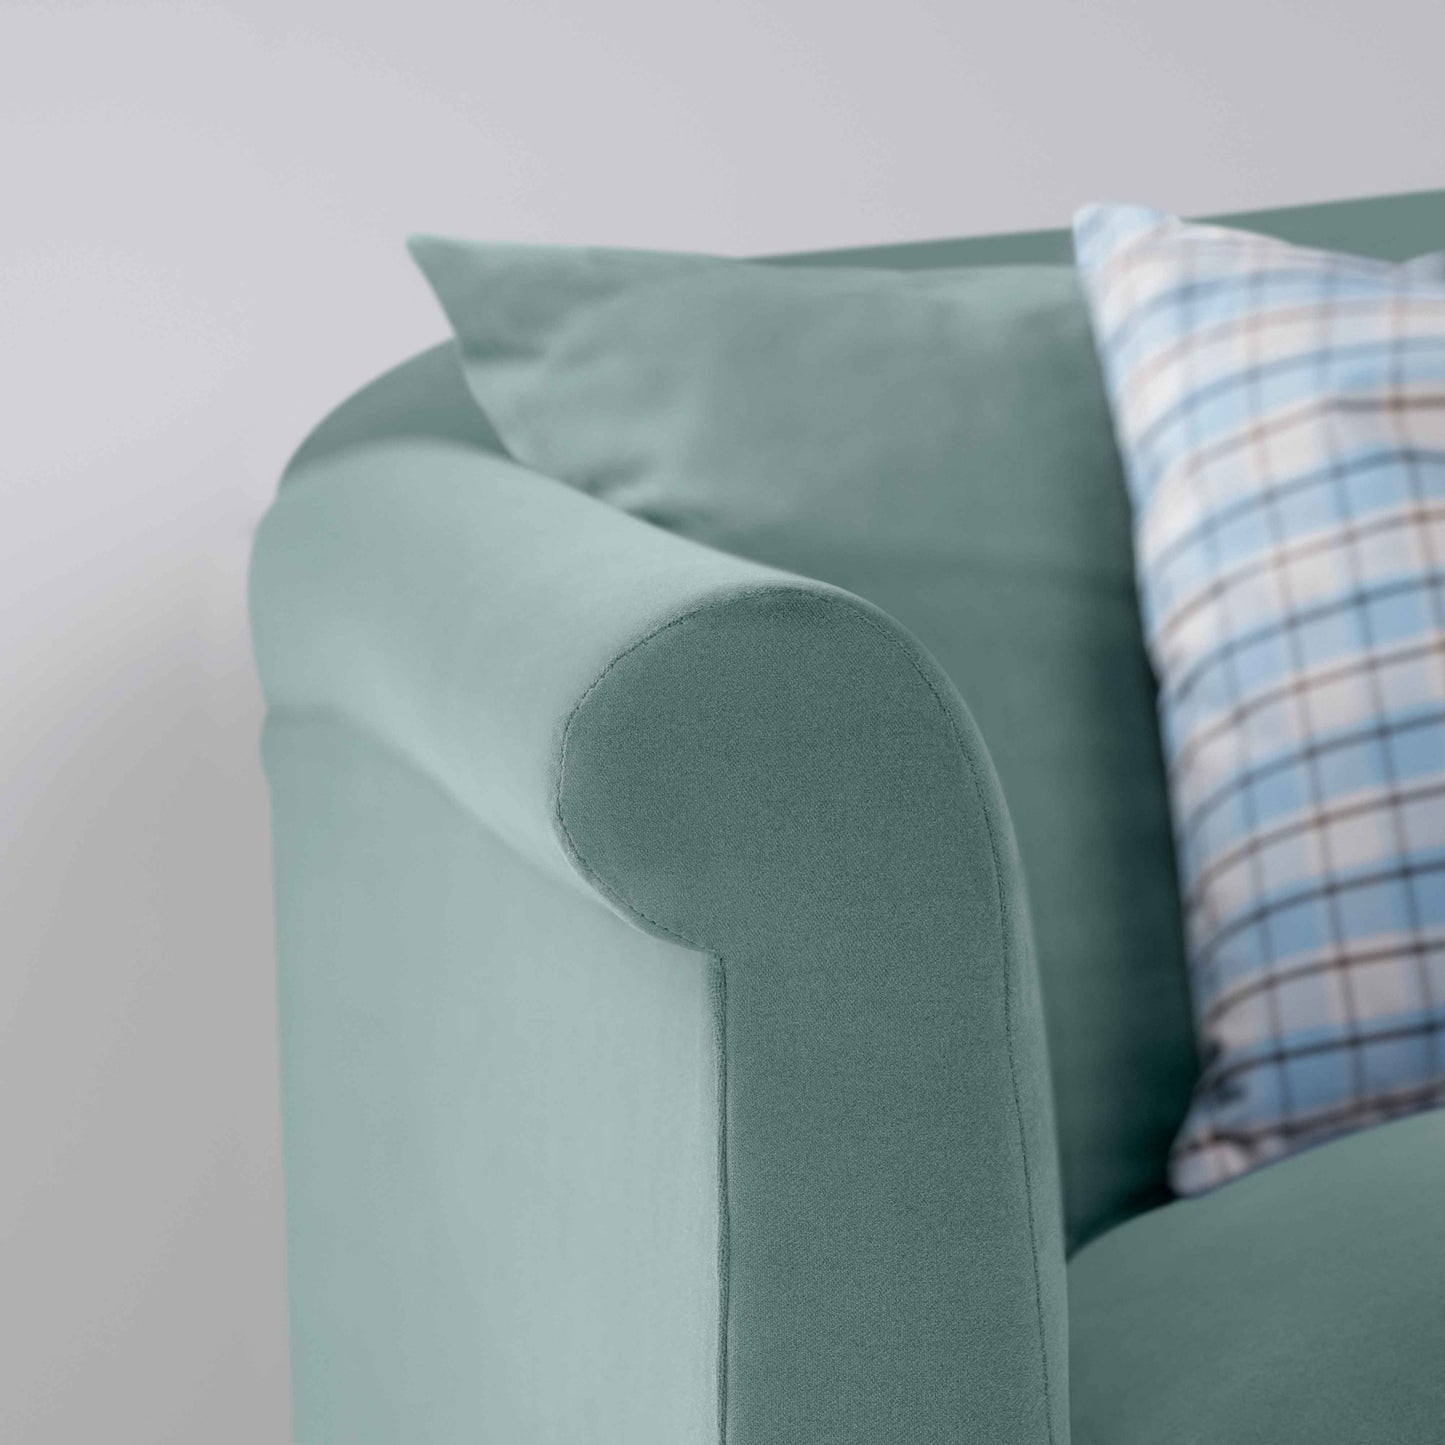 More the Merrier 4 seater sofa in Intelligent Velvet Mineral